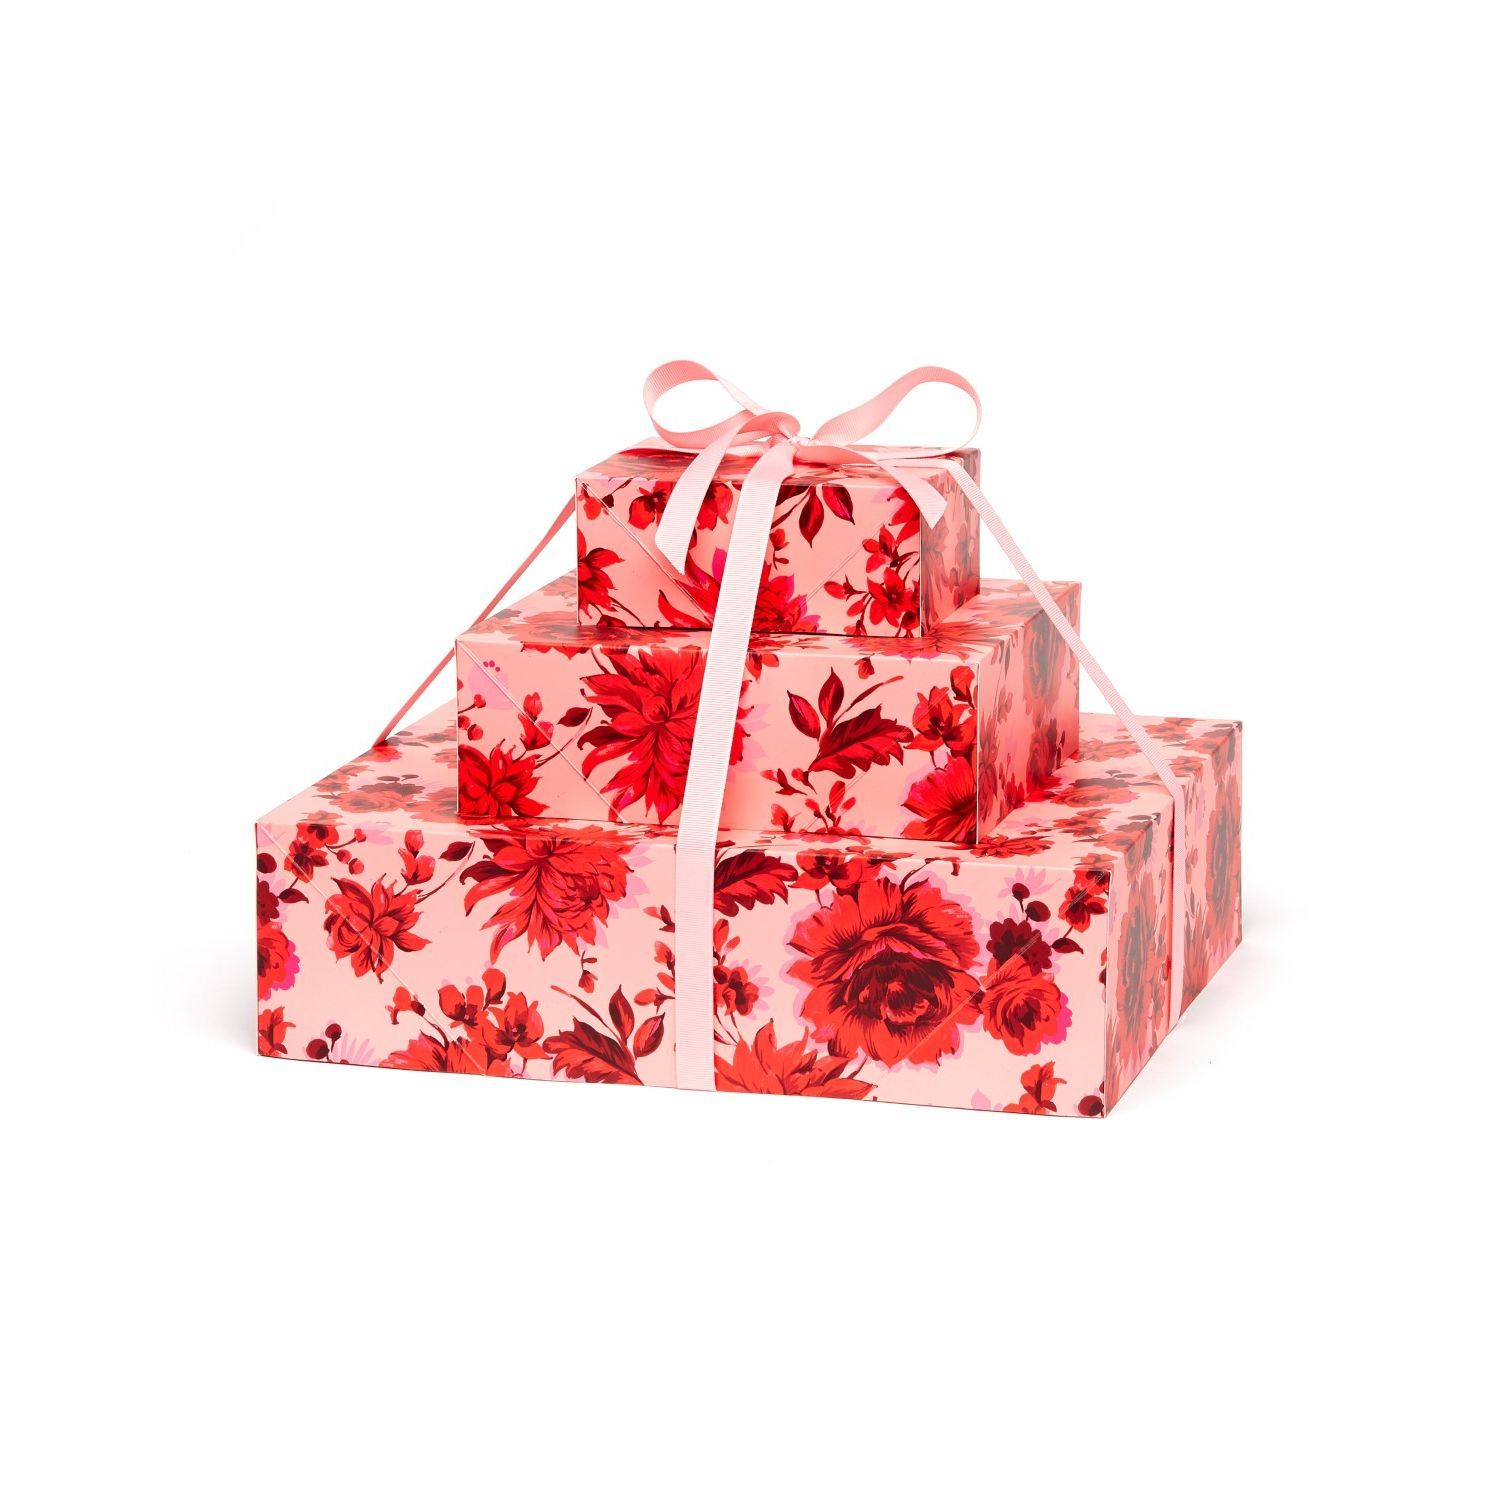 Ban.do Wrap It Up Gift Wrap Set Potpourri